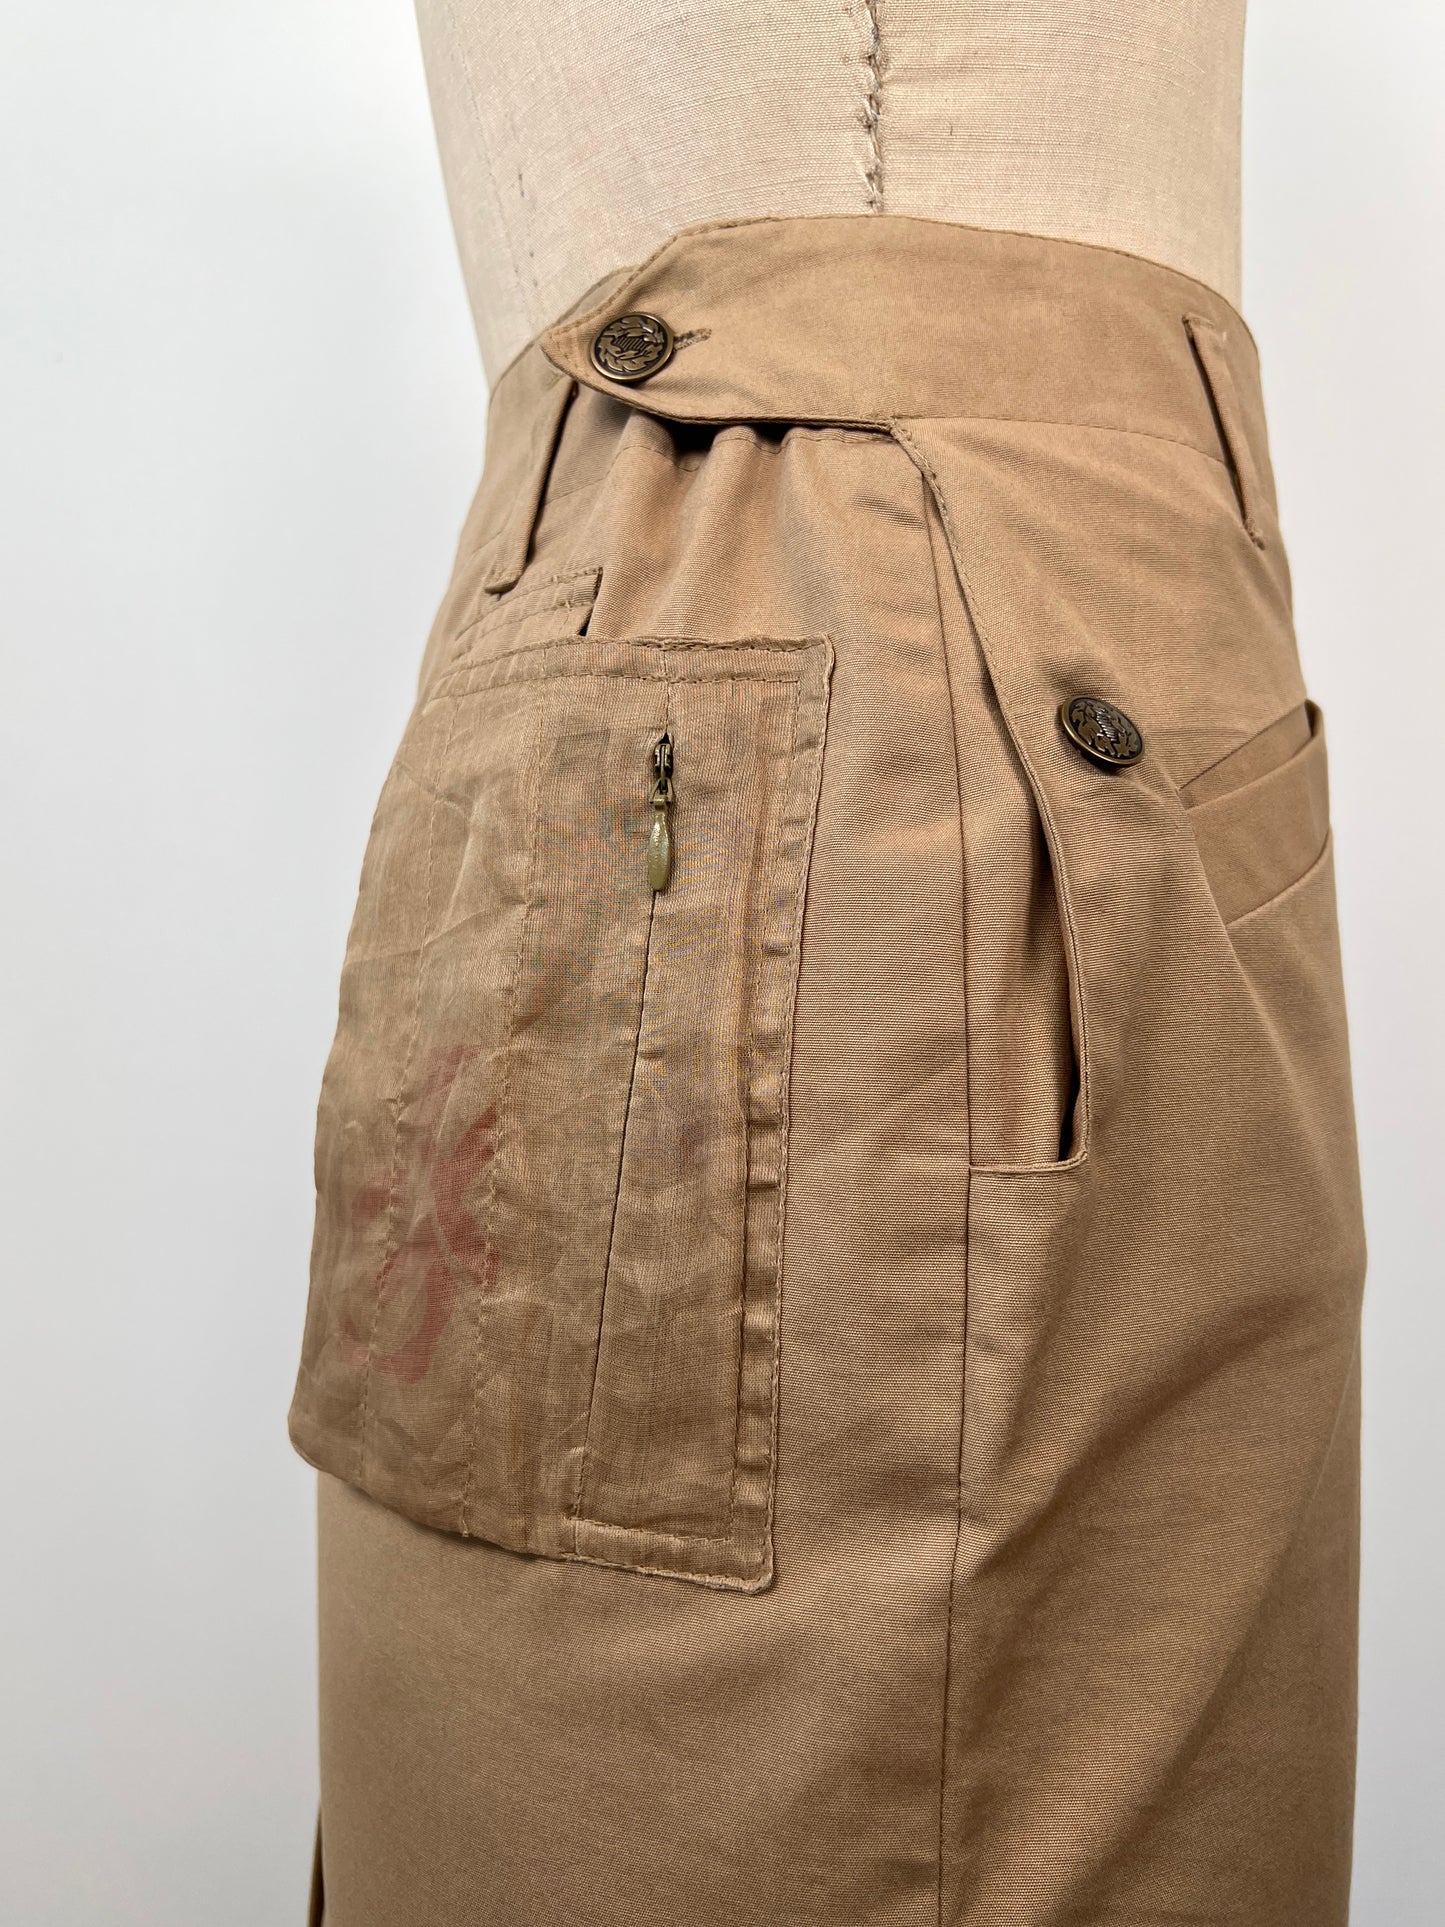 Jupe crayon beige style militaire à poche filet (XS/S)